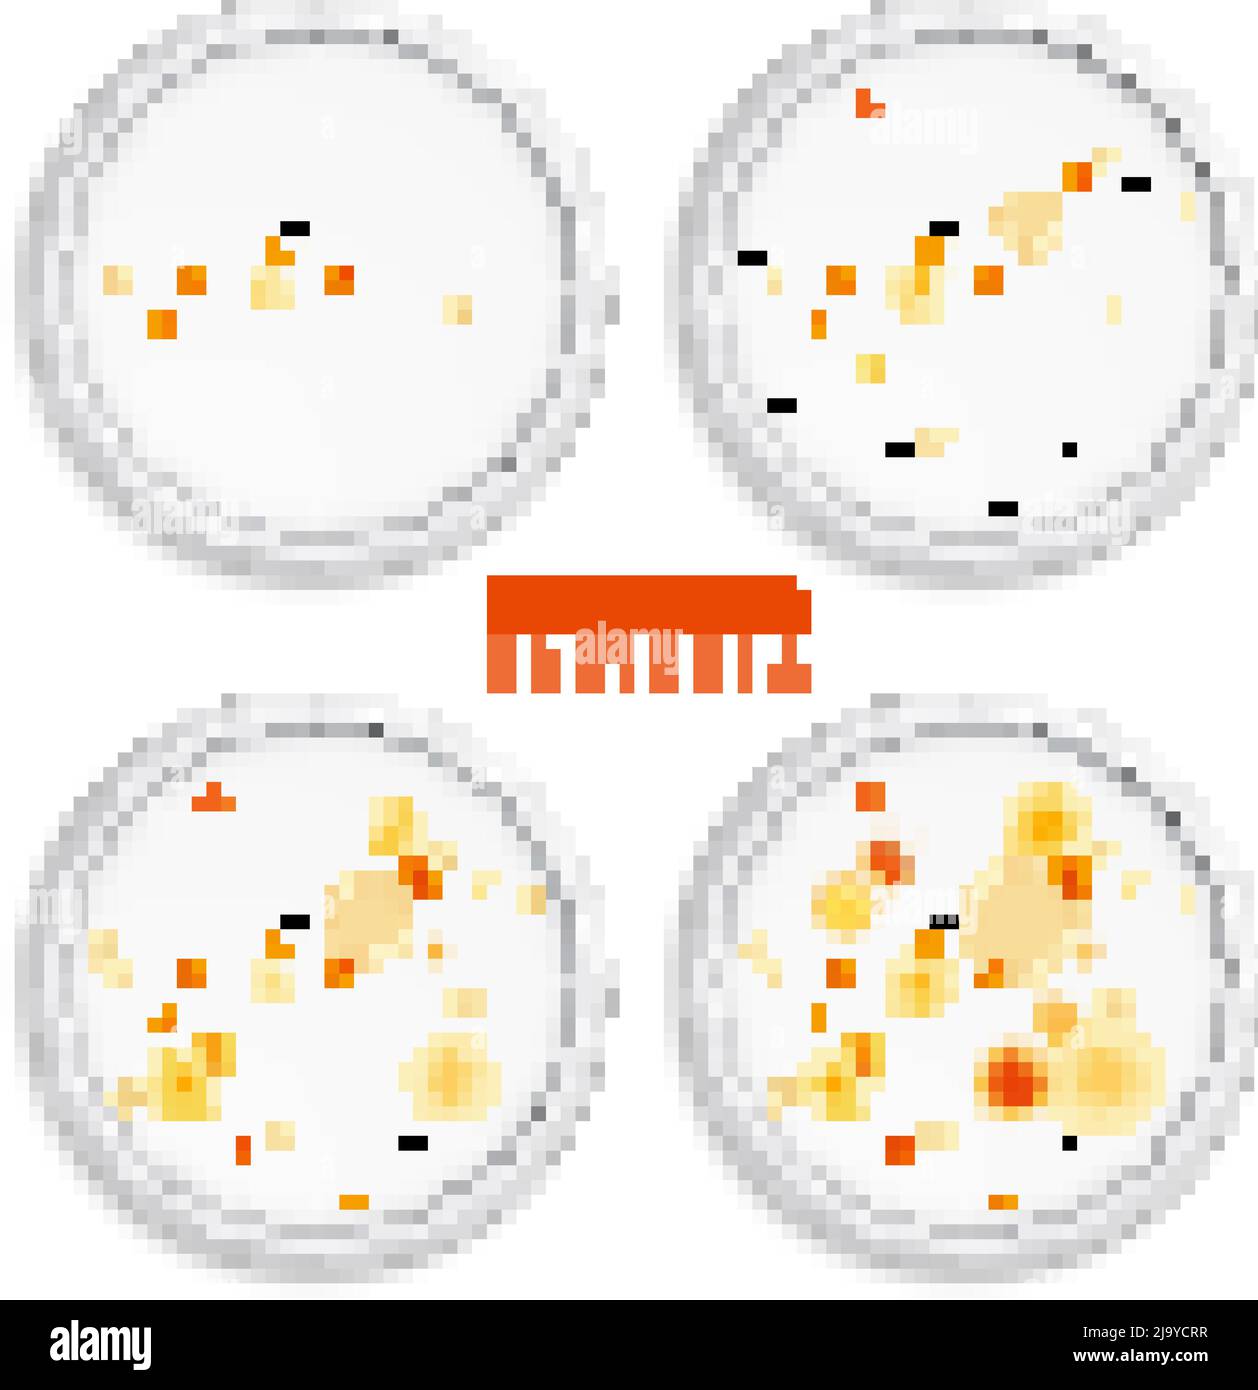 Mold Fungus bacteria coloni insieme di quattro immagini realistiche con cornici rotonde punti colorati e testo vettoriale illustrazione Illustrazione Vettoriale